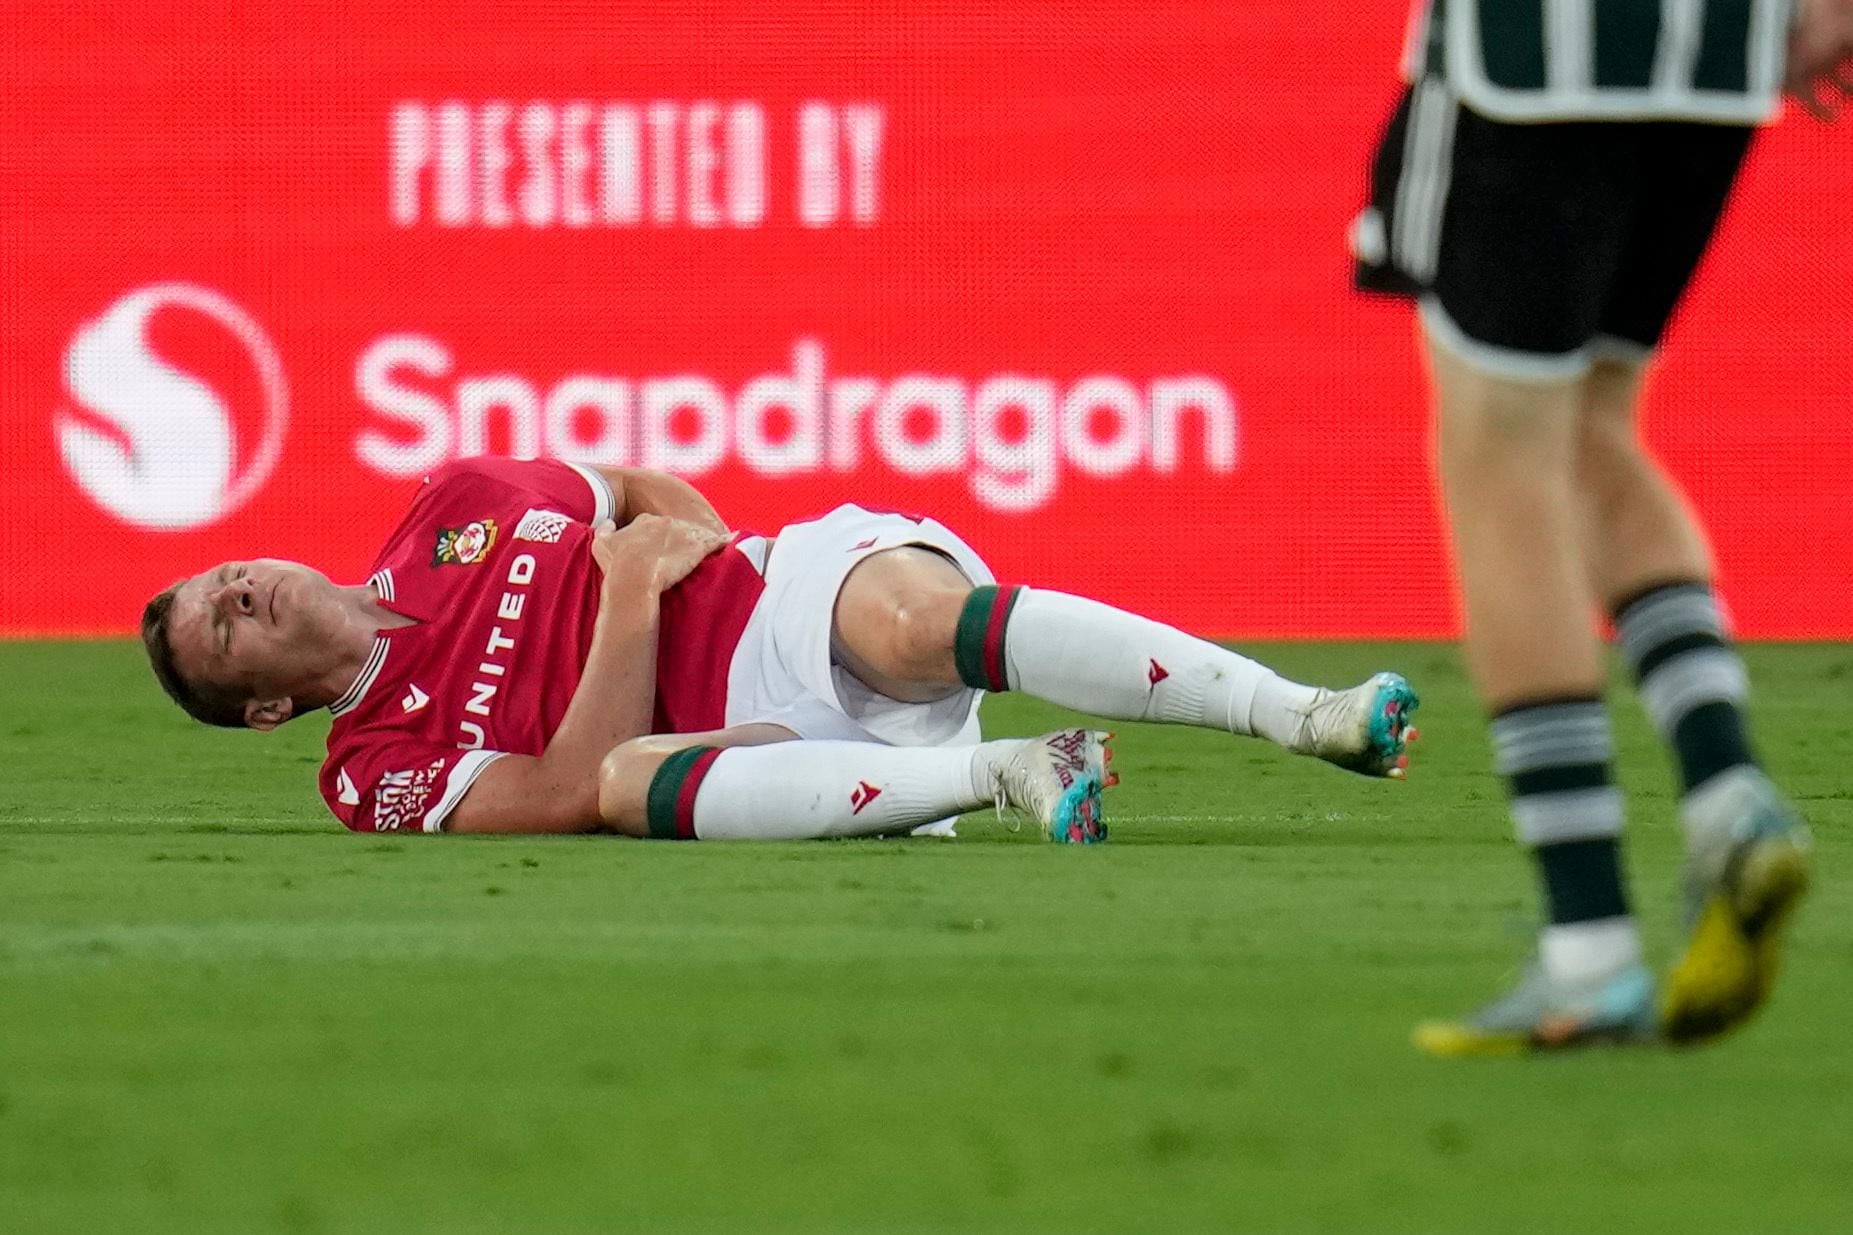 Jogador sofre parada cardíaca durante partida do Campeonato Inglês